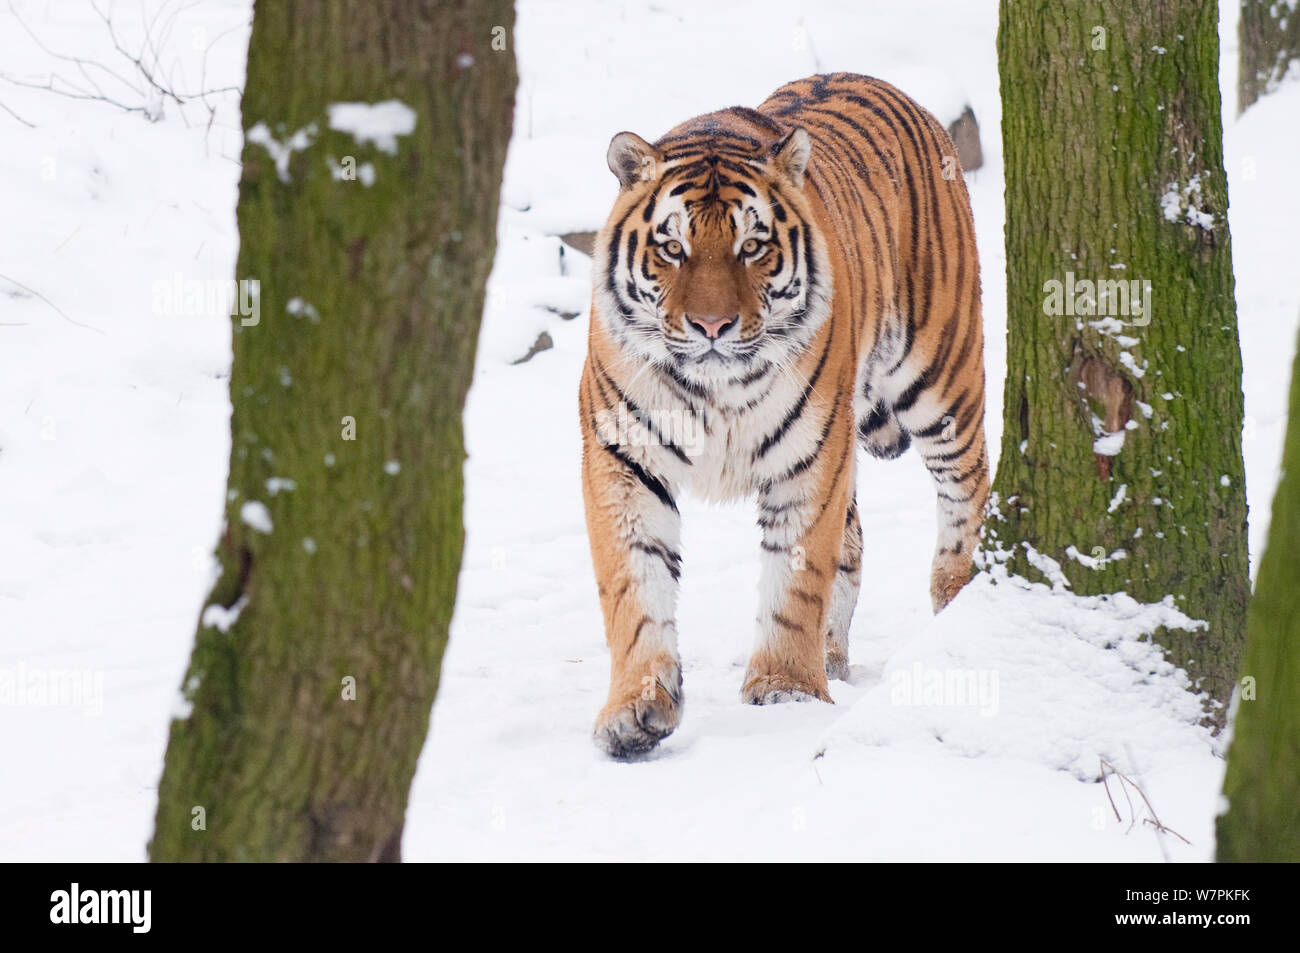 Tigre de Sibérie (Panthera tigris altaica) marcher dans la neige, captive Banque D'Images